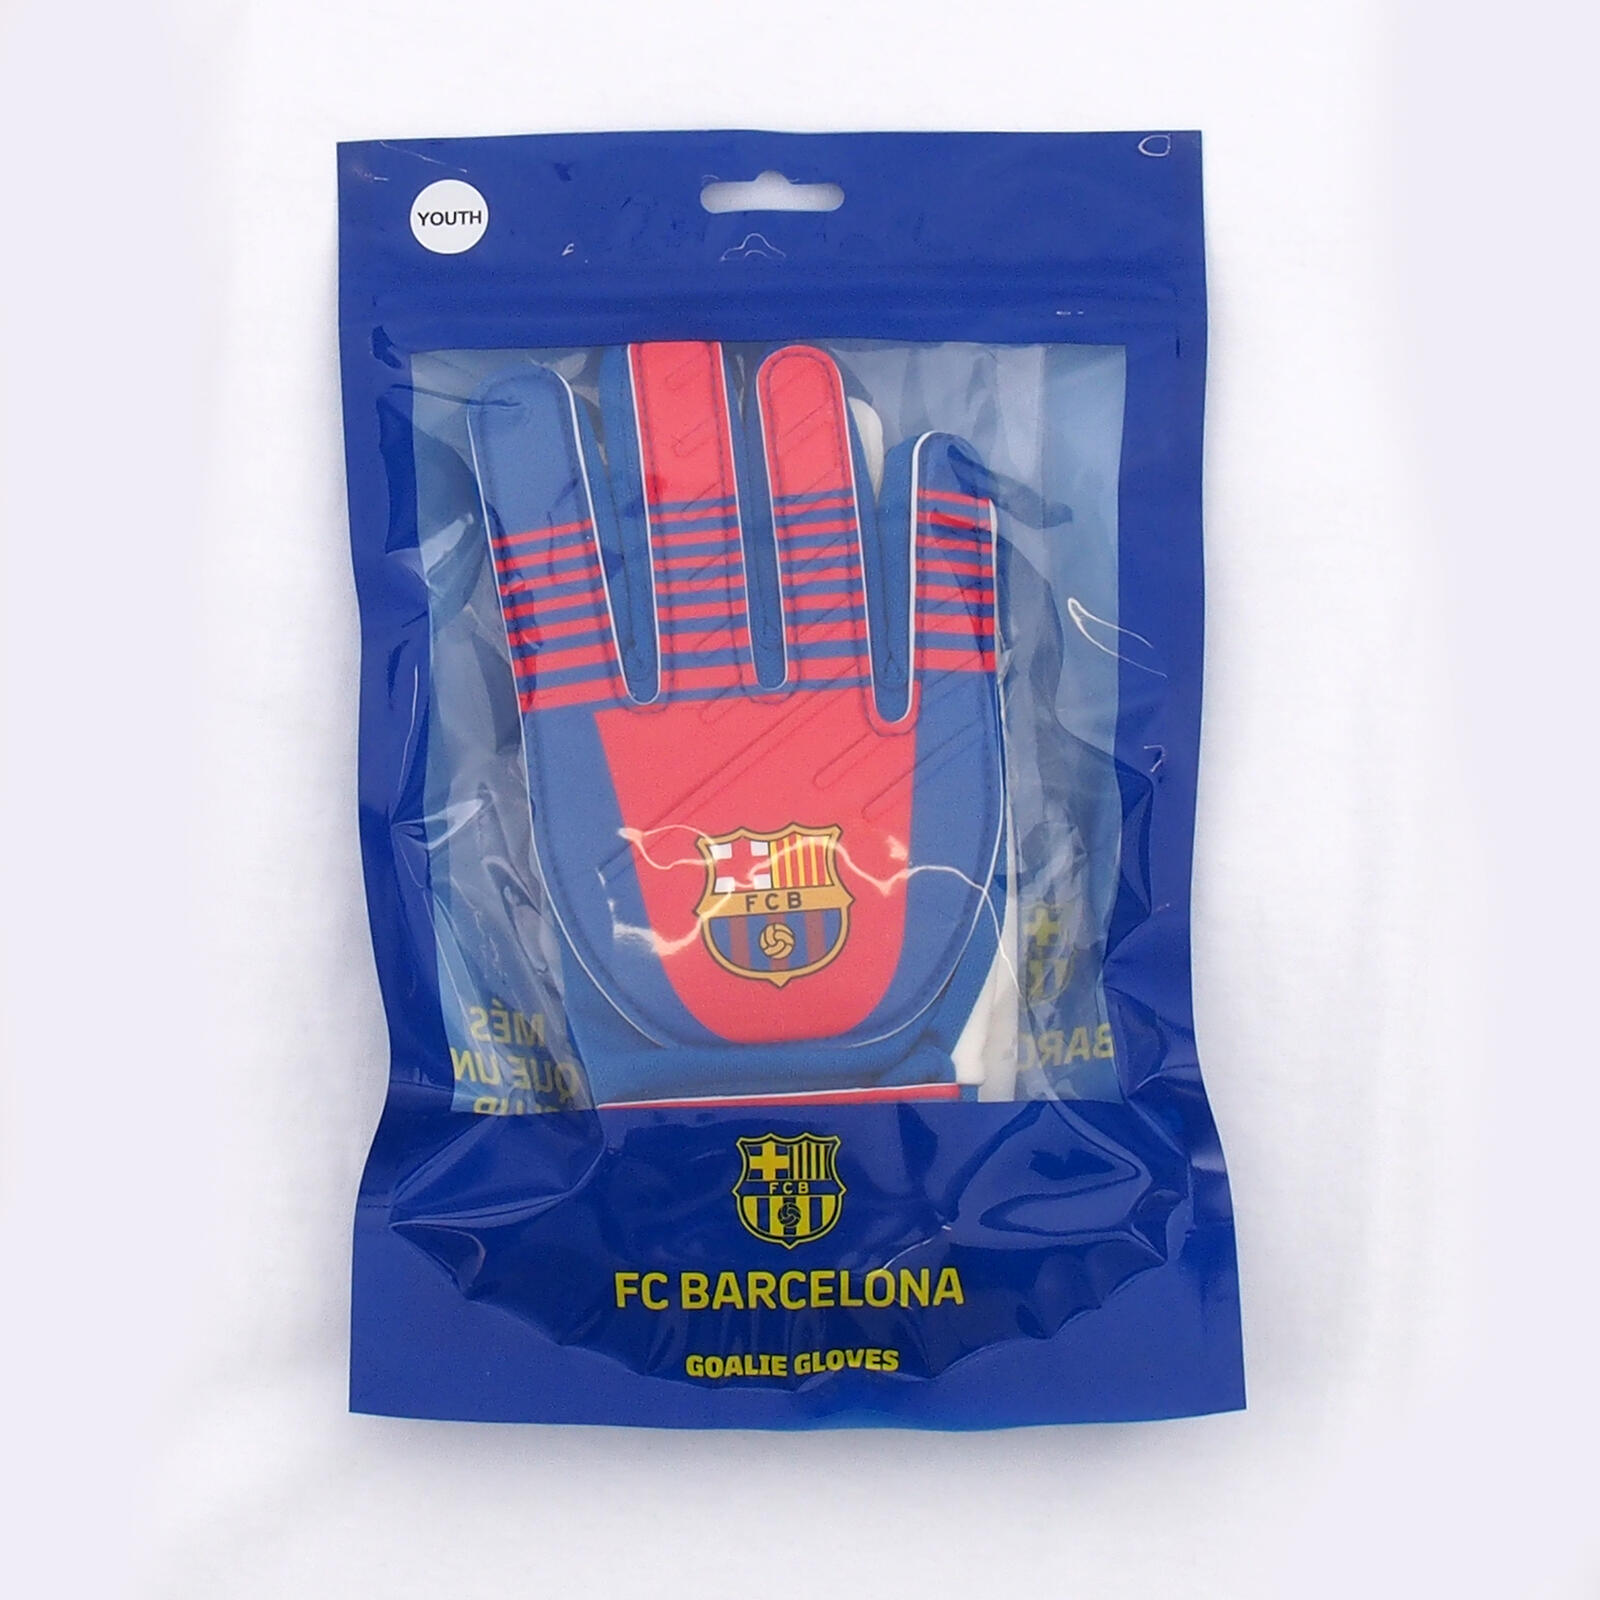 FC Barcelona Boys Gloves Goalie Goalkeeper Kids Youths OFFICIAL Football Gift 5/5